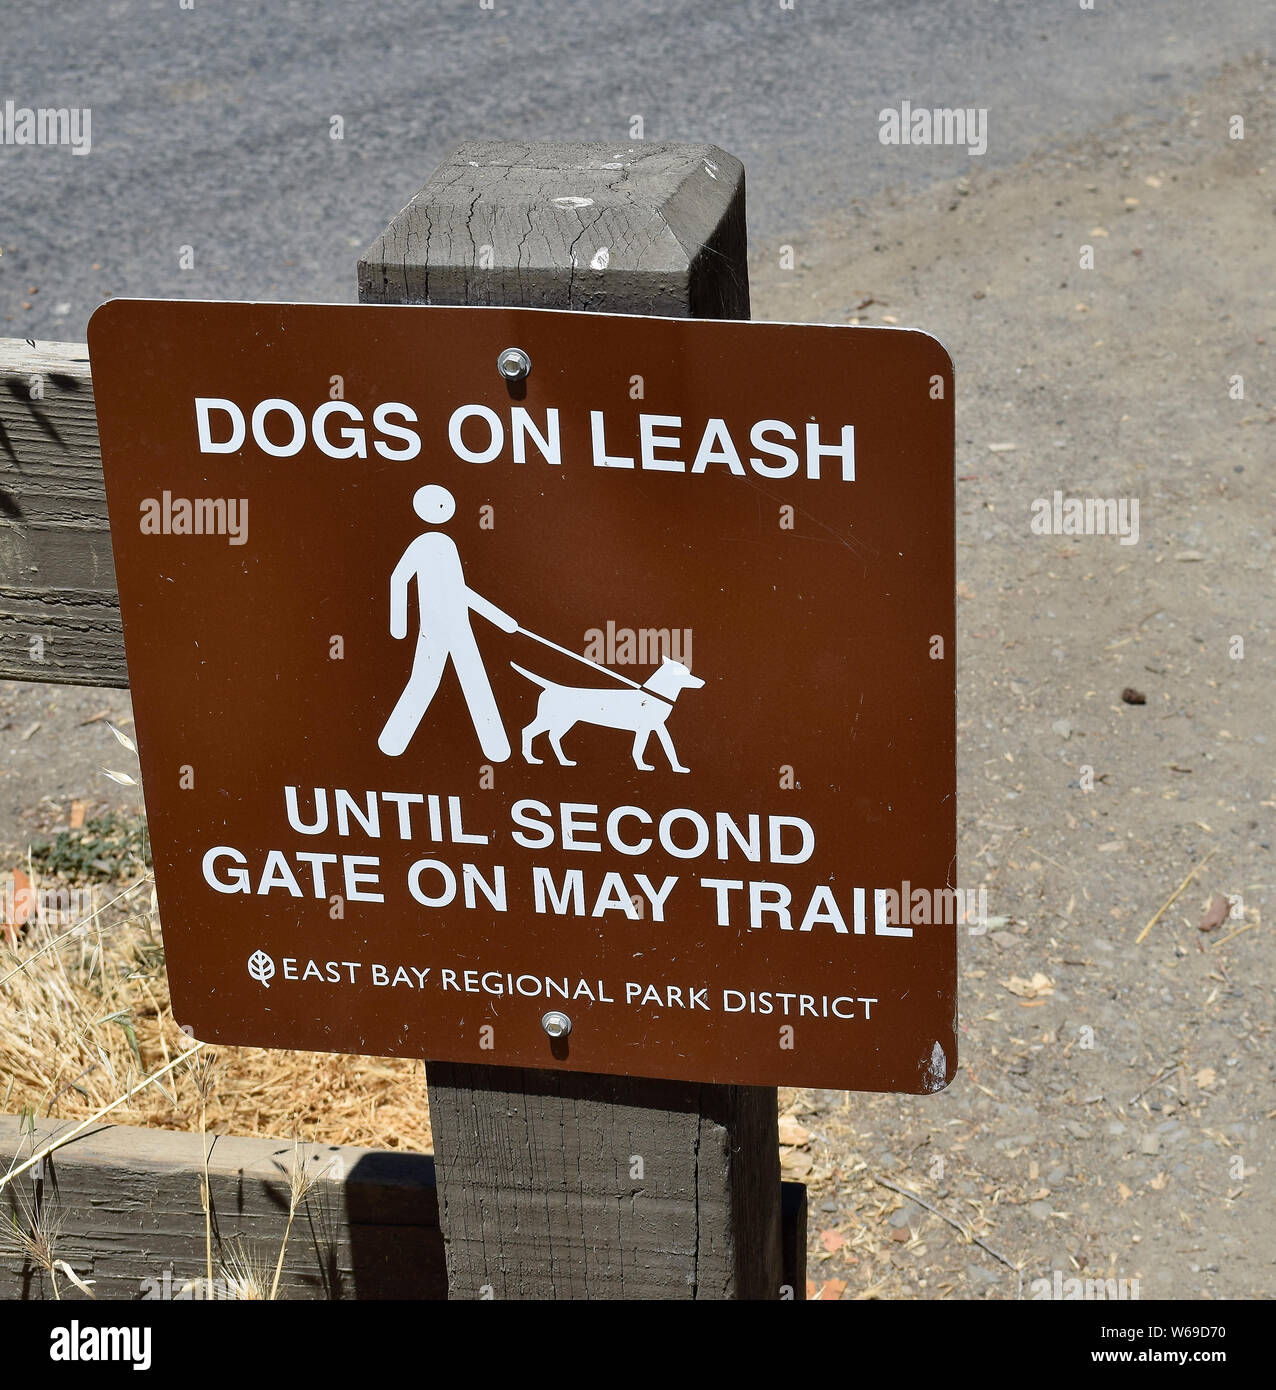 Hunde an der Leine bis zum zweiten Tor auf Mai trail Zeichen n Dry Creek Pioneer Regional Park Union City, Kalifornien Stockfoto